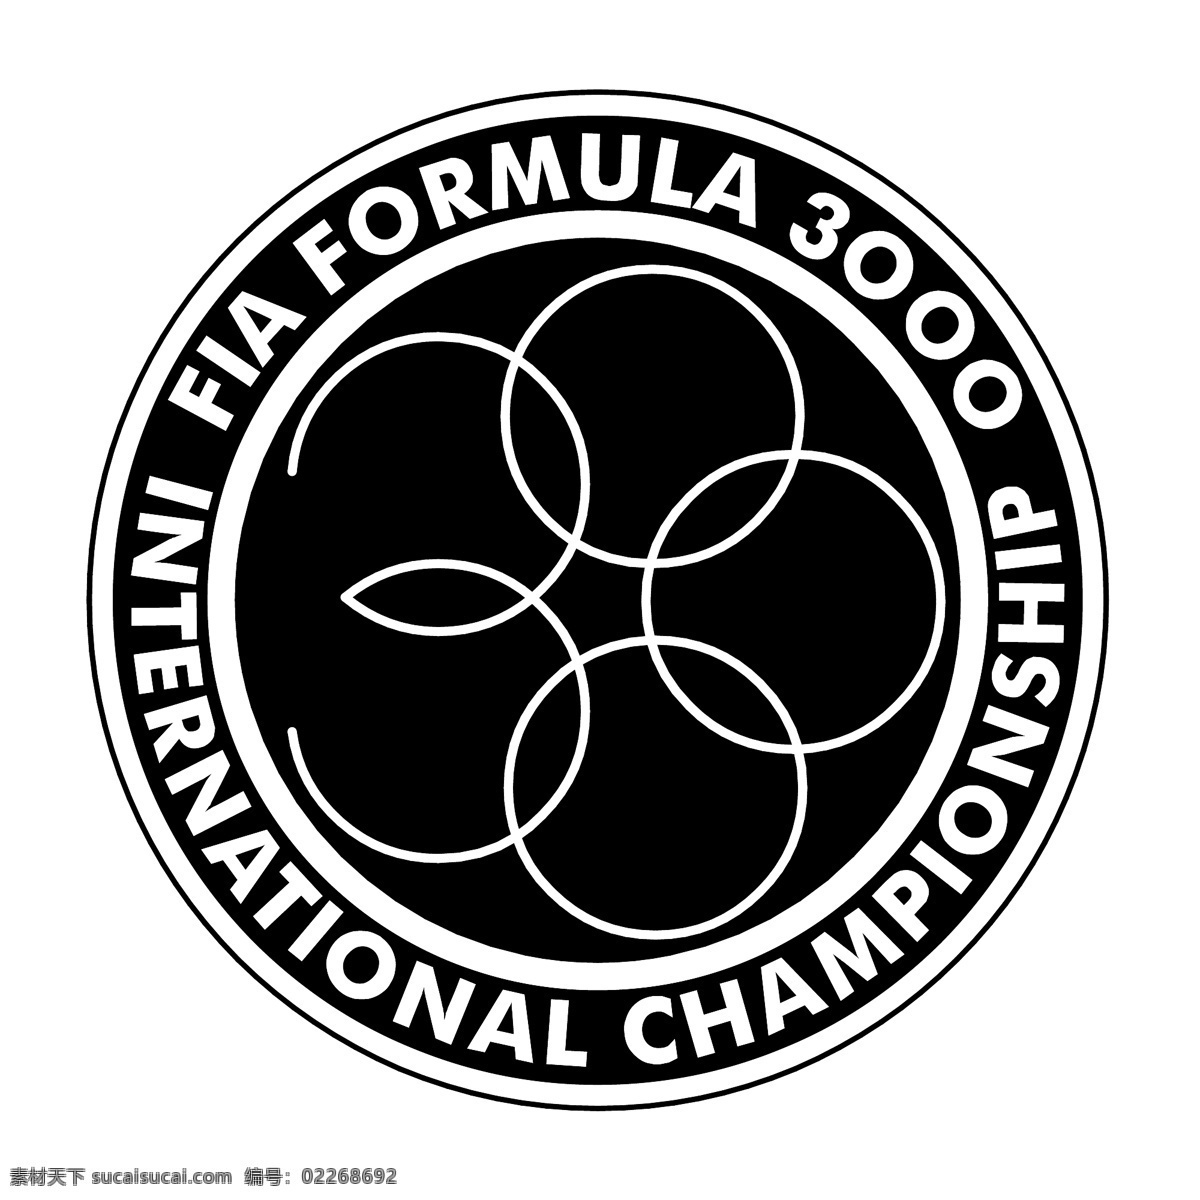 国际汽联 方程式 国际 锦标赛 免费 一级 方程式赛车 标识 徽标 公式 psd源文件 logo设计